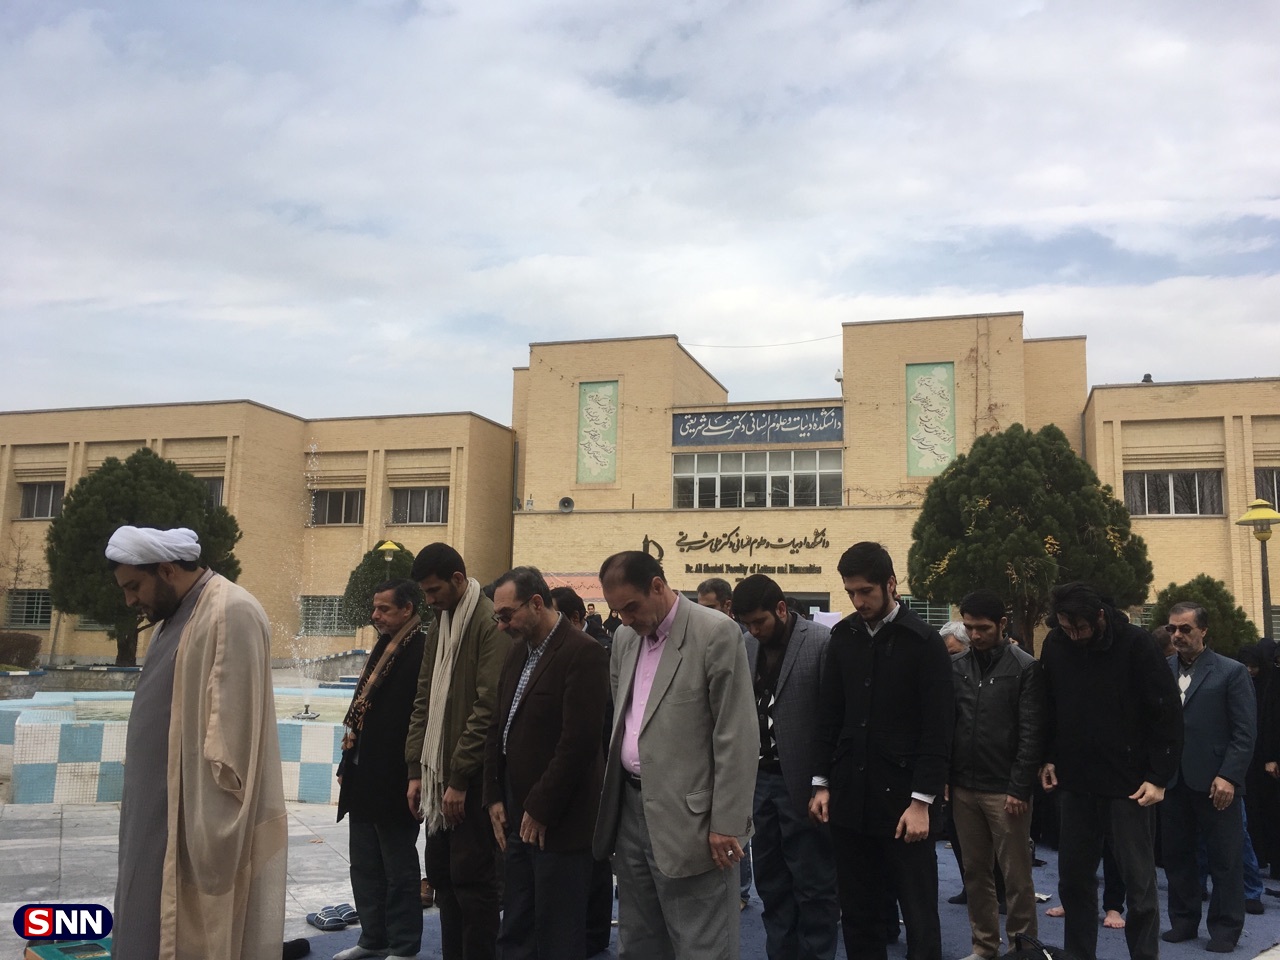 محدودیت برای برگزاری برنامه سیاسی در فردوسی مشهد داد تشکل ‌ها را درآورد/برای رقص و پایکوبی مجوز می‌دهند اما برای سخنرانی انقلابی نه!